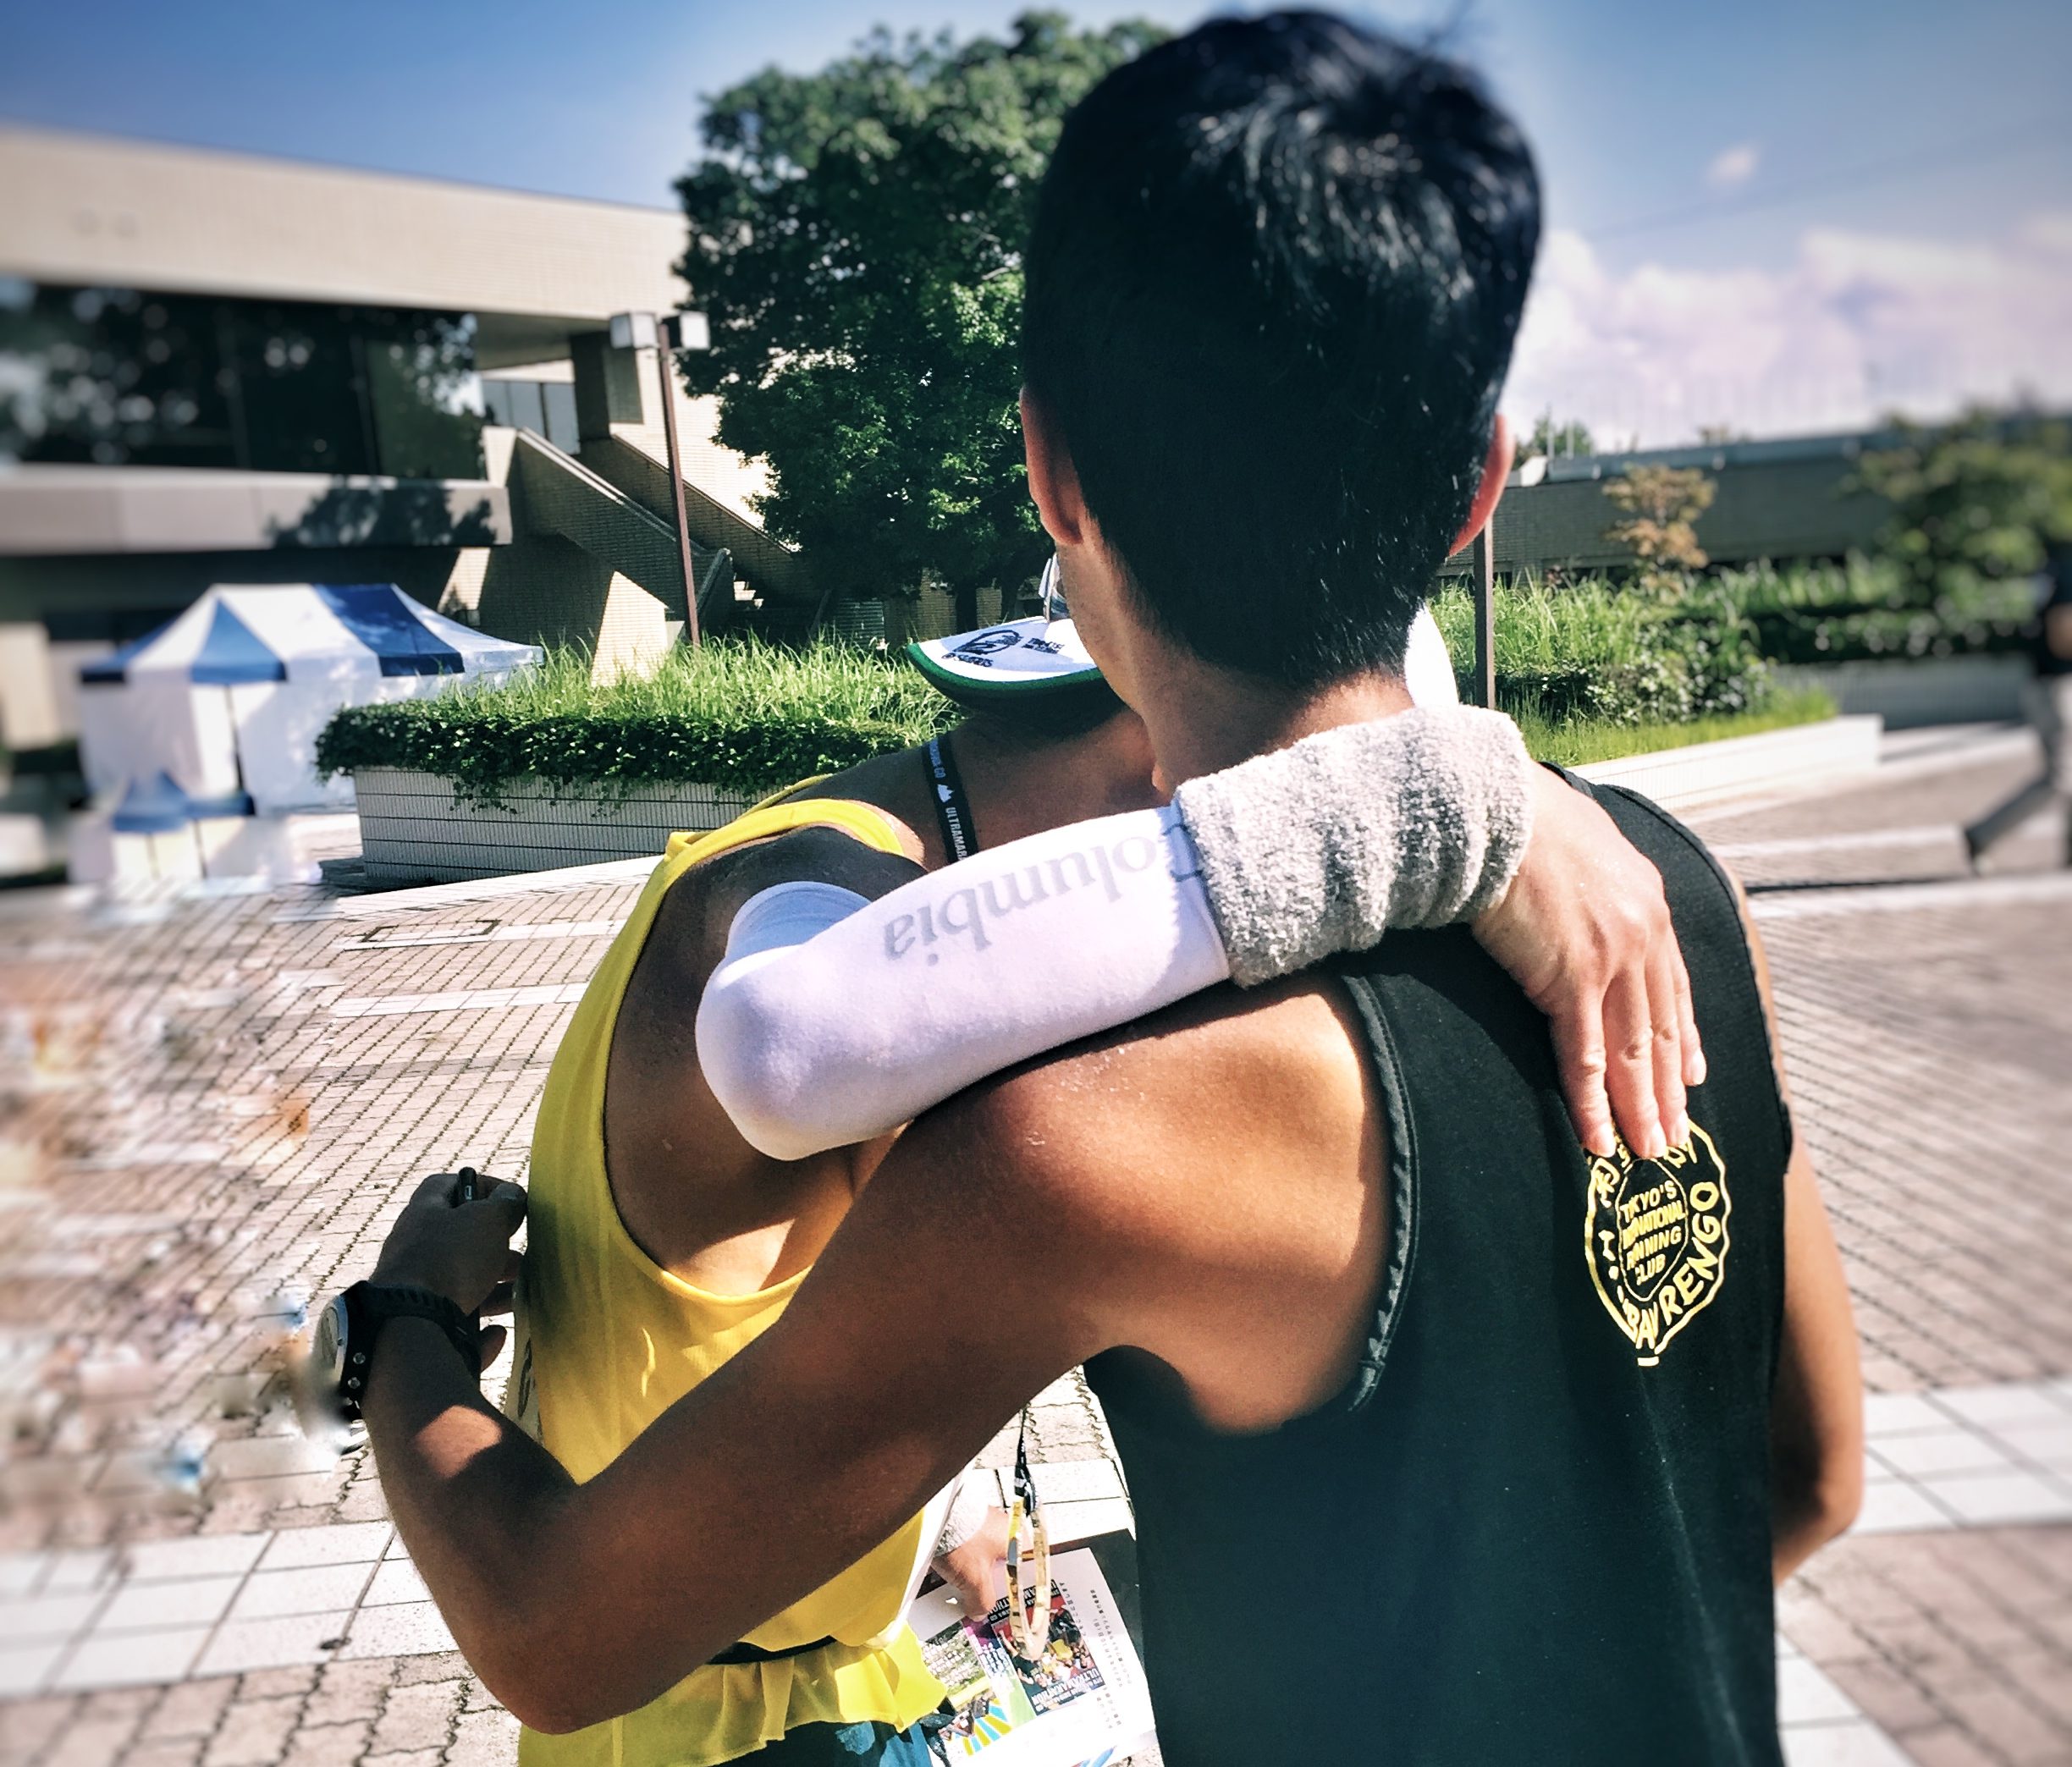 Shirakawago Ultramarathon 2017 – Harri’s report